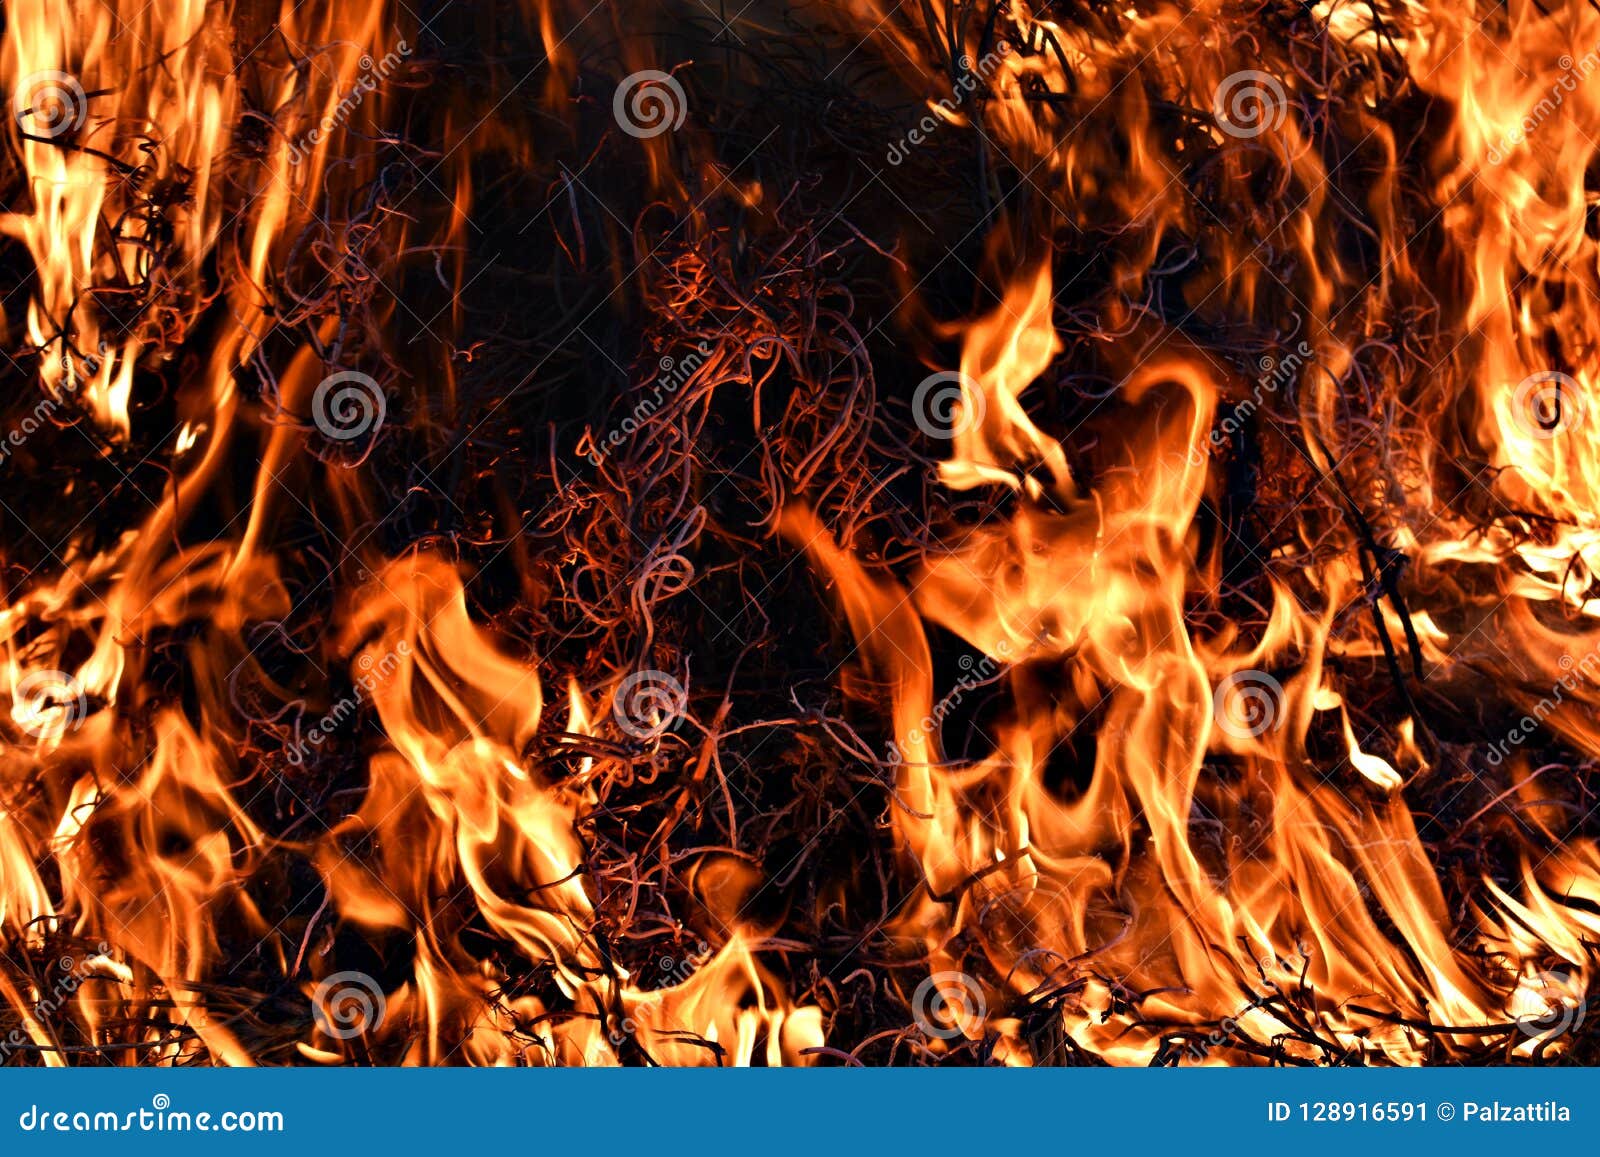 FireWood Campfire Mountain Wallpaper  720x1600